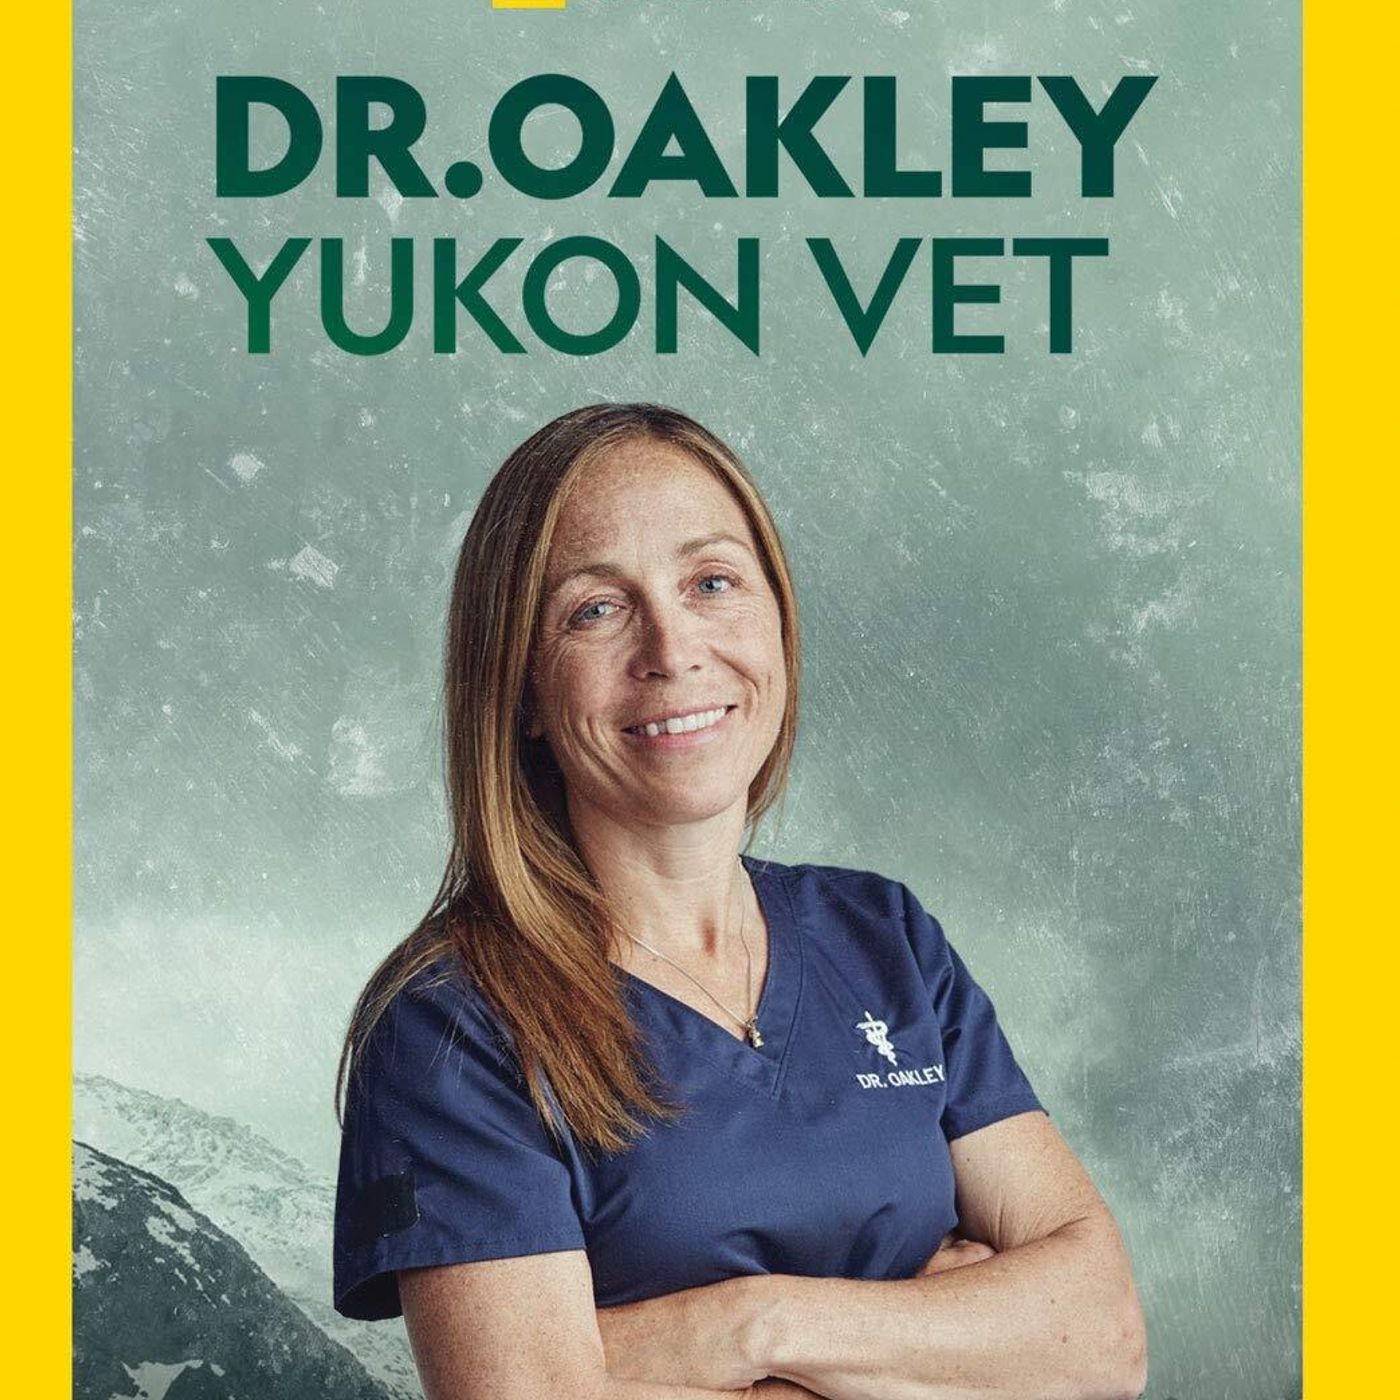 ”Dr. Oakley - Yukon Vet”  - NatGeo Wild